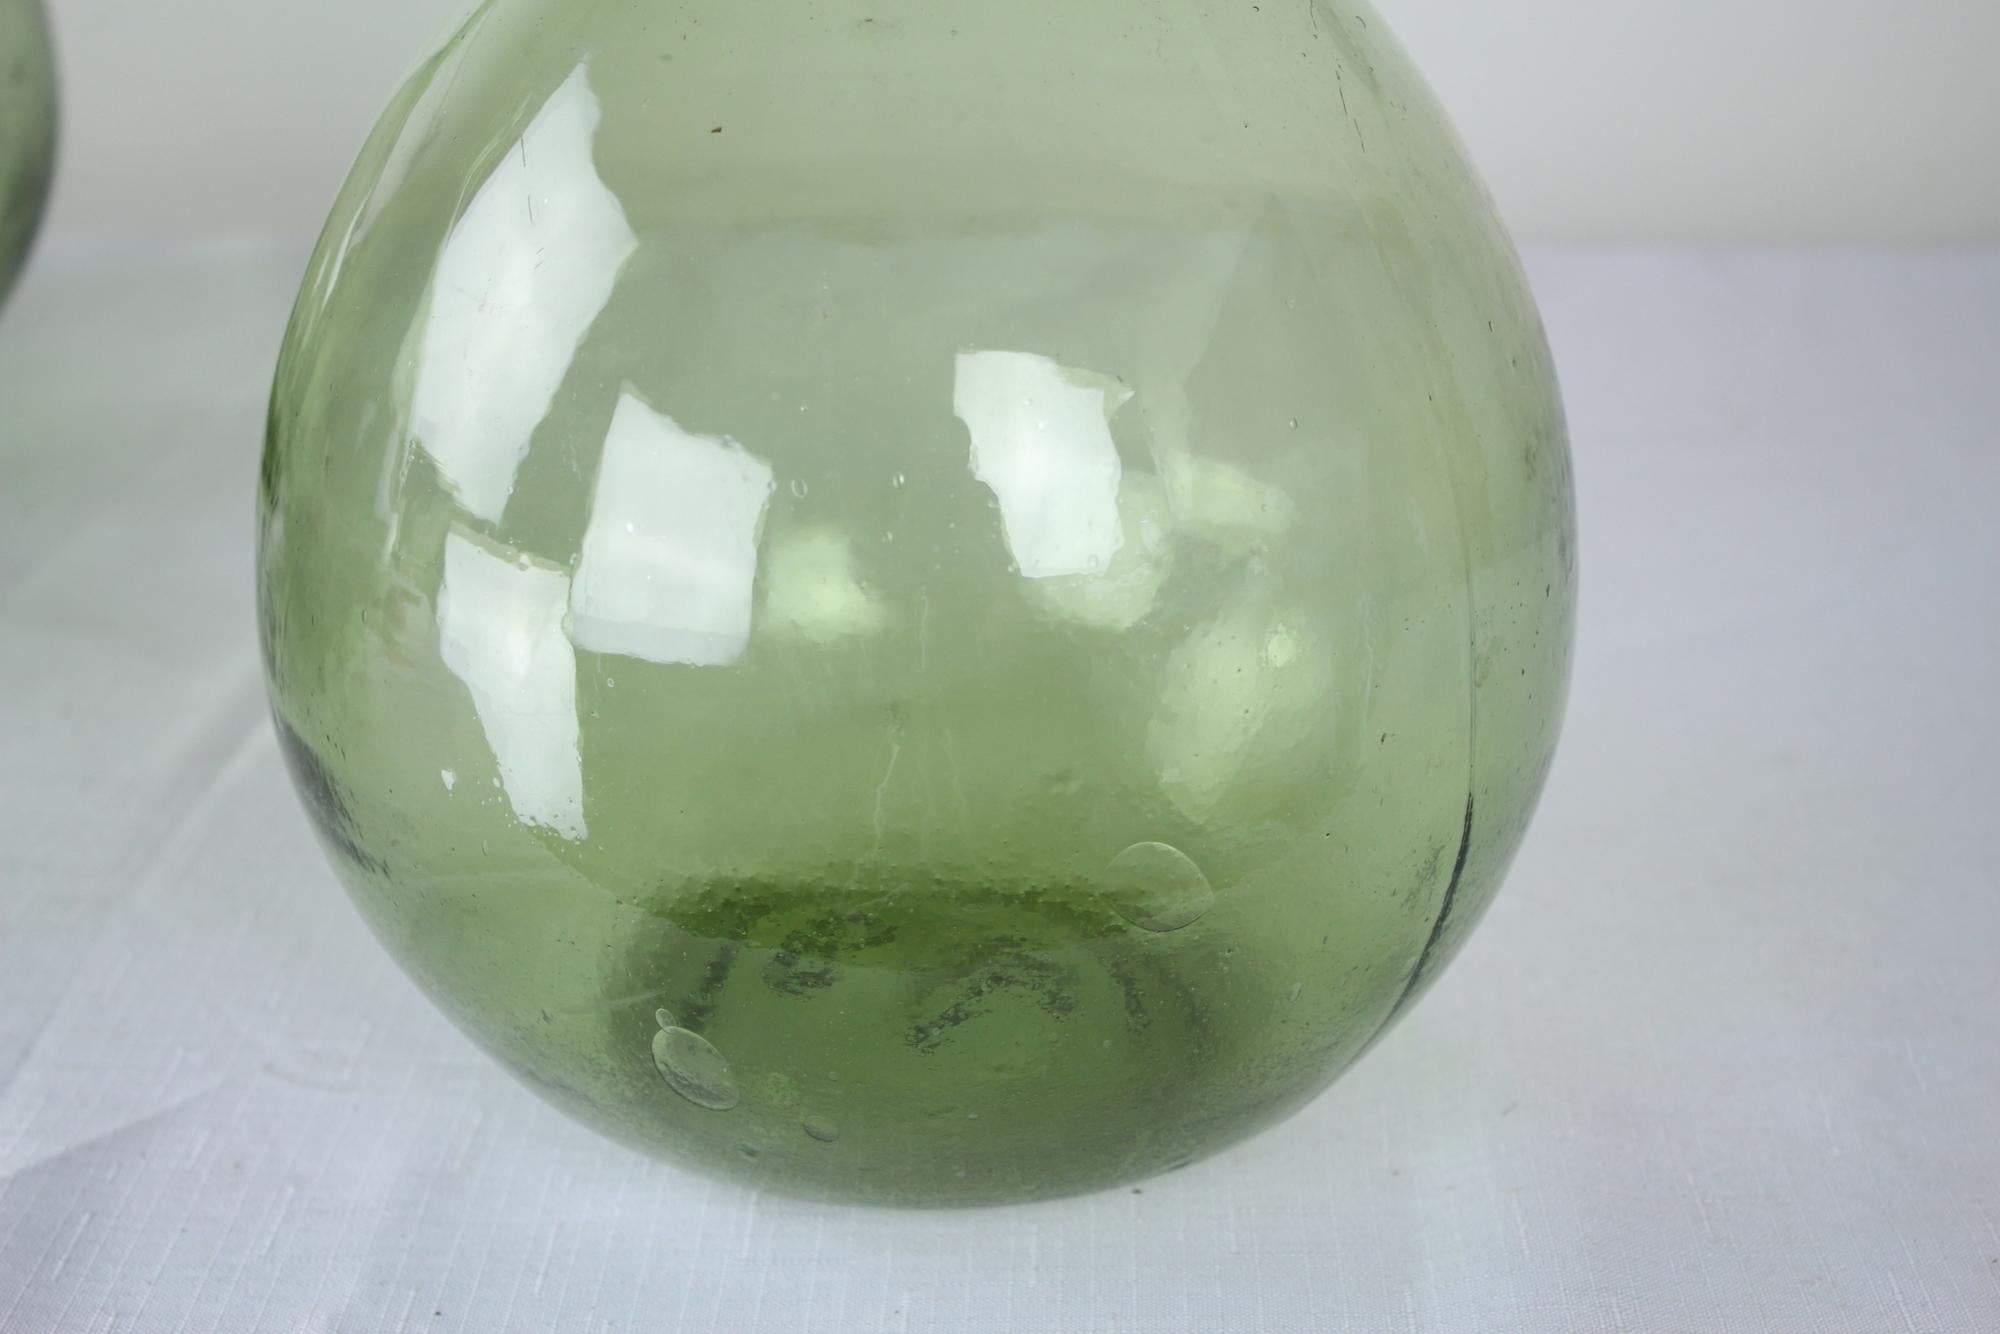 green demijohn bottle